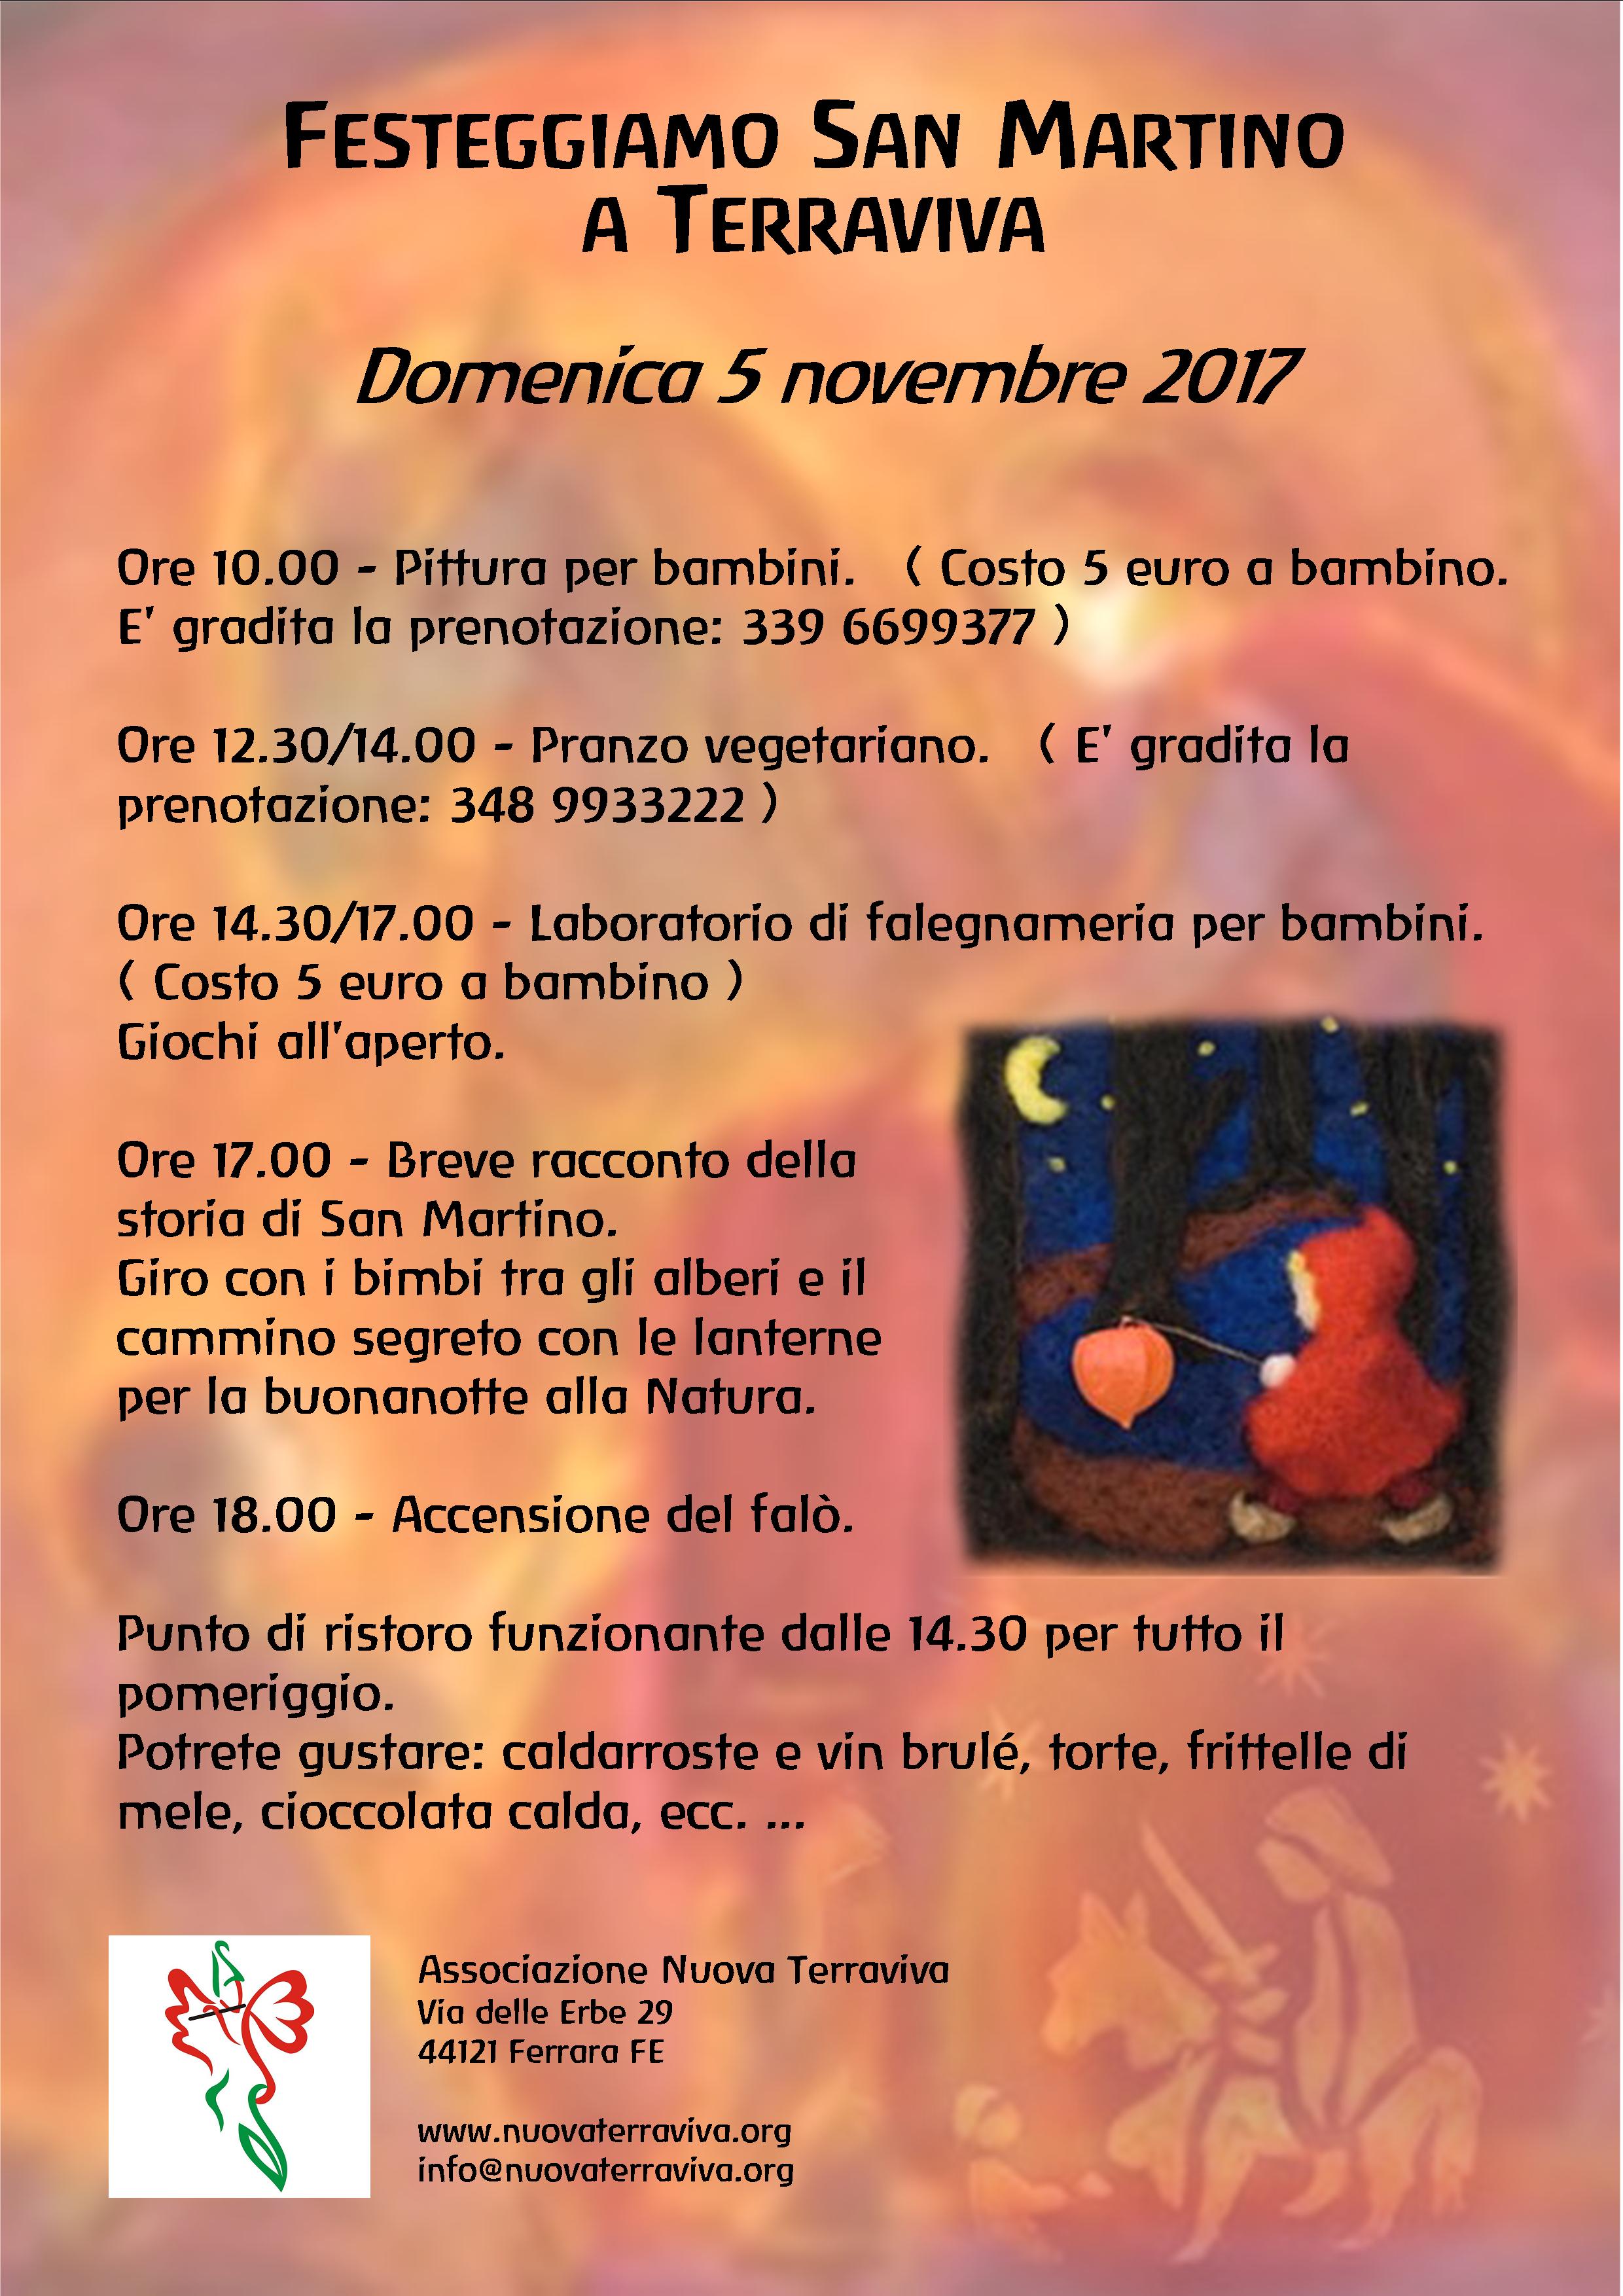 Festa di San Martino @ Associazione Nuova Terraviva | Ferrara | Emilia-Romagna | Italia